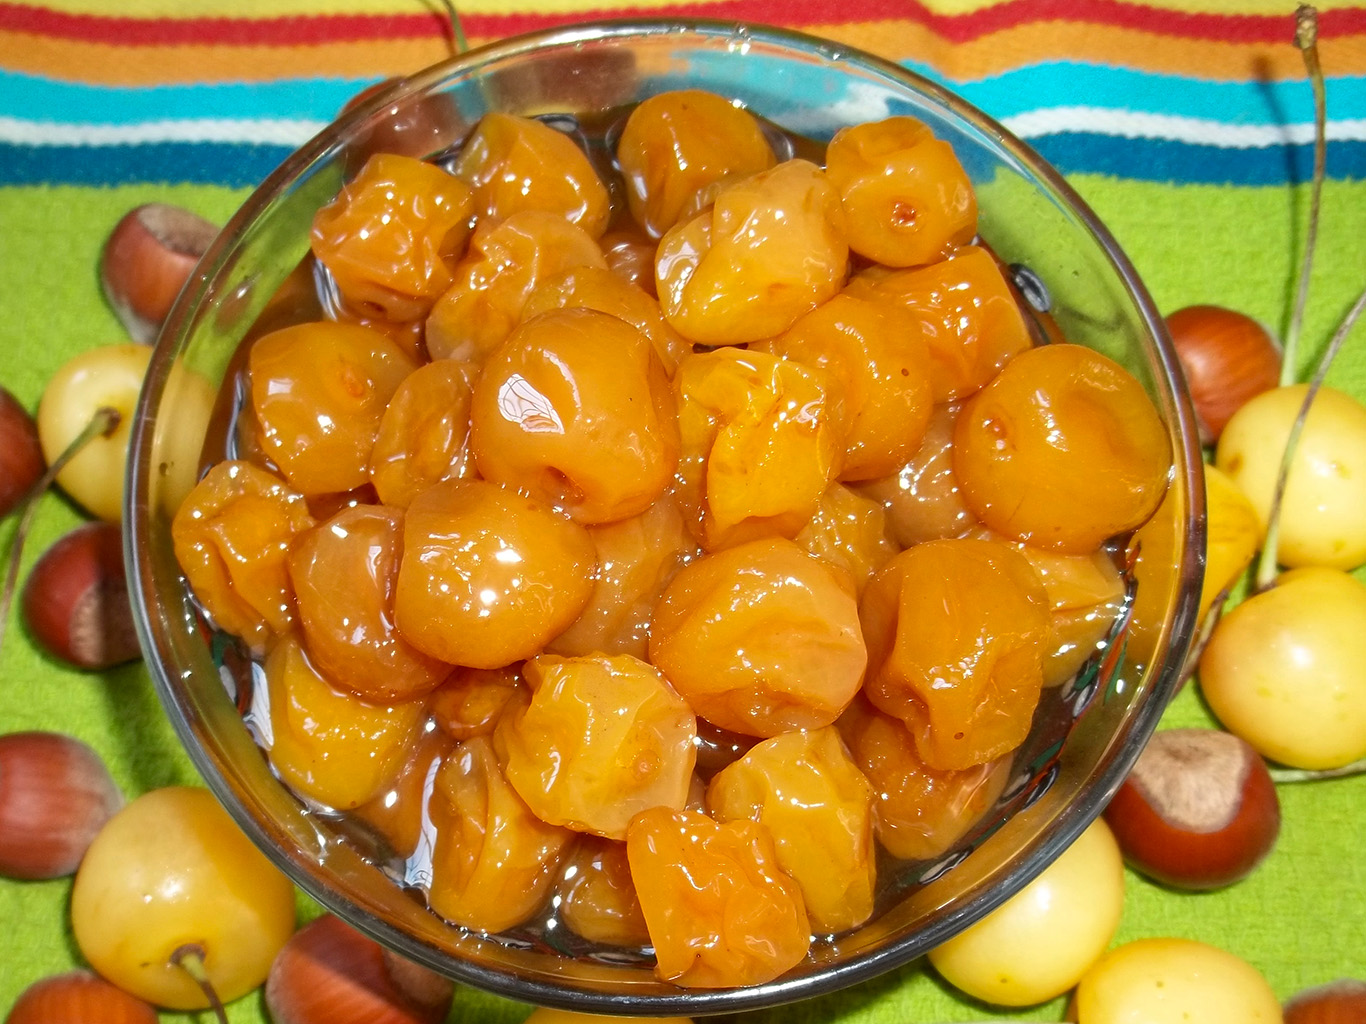 Muraba podobná džemu se připravuje z ovoce, cukru a koření